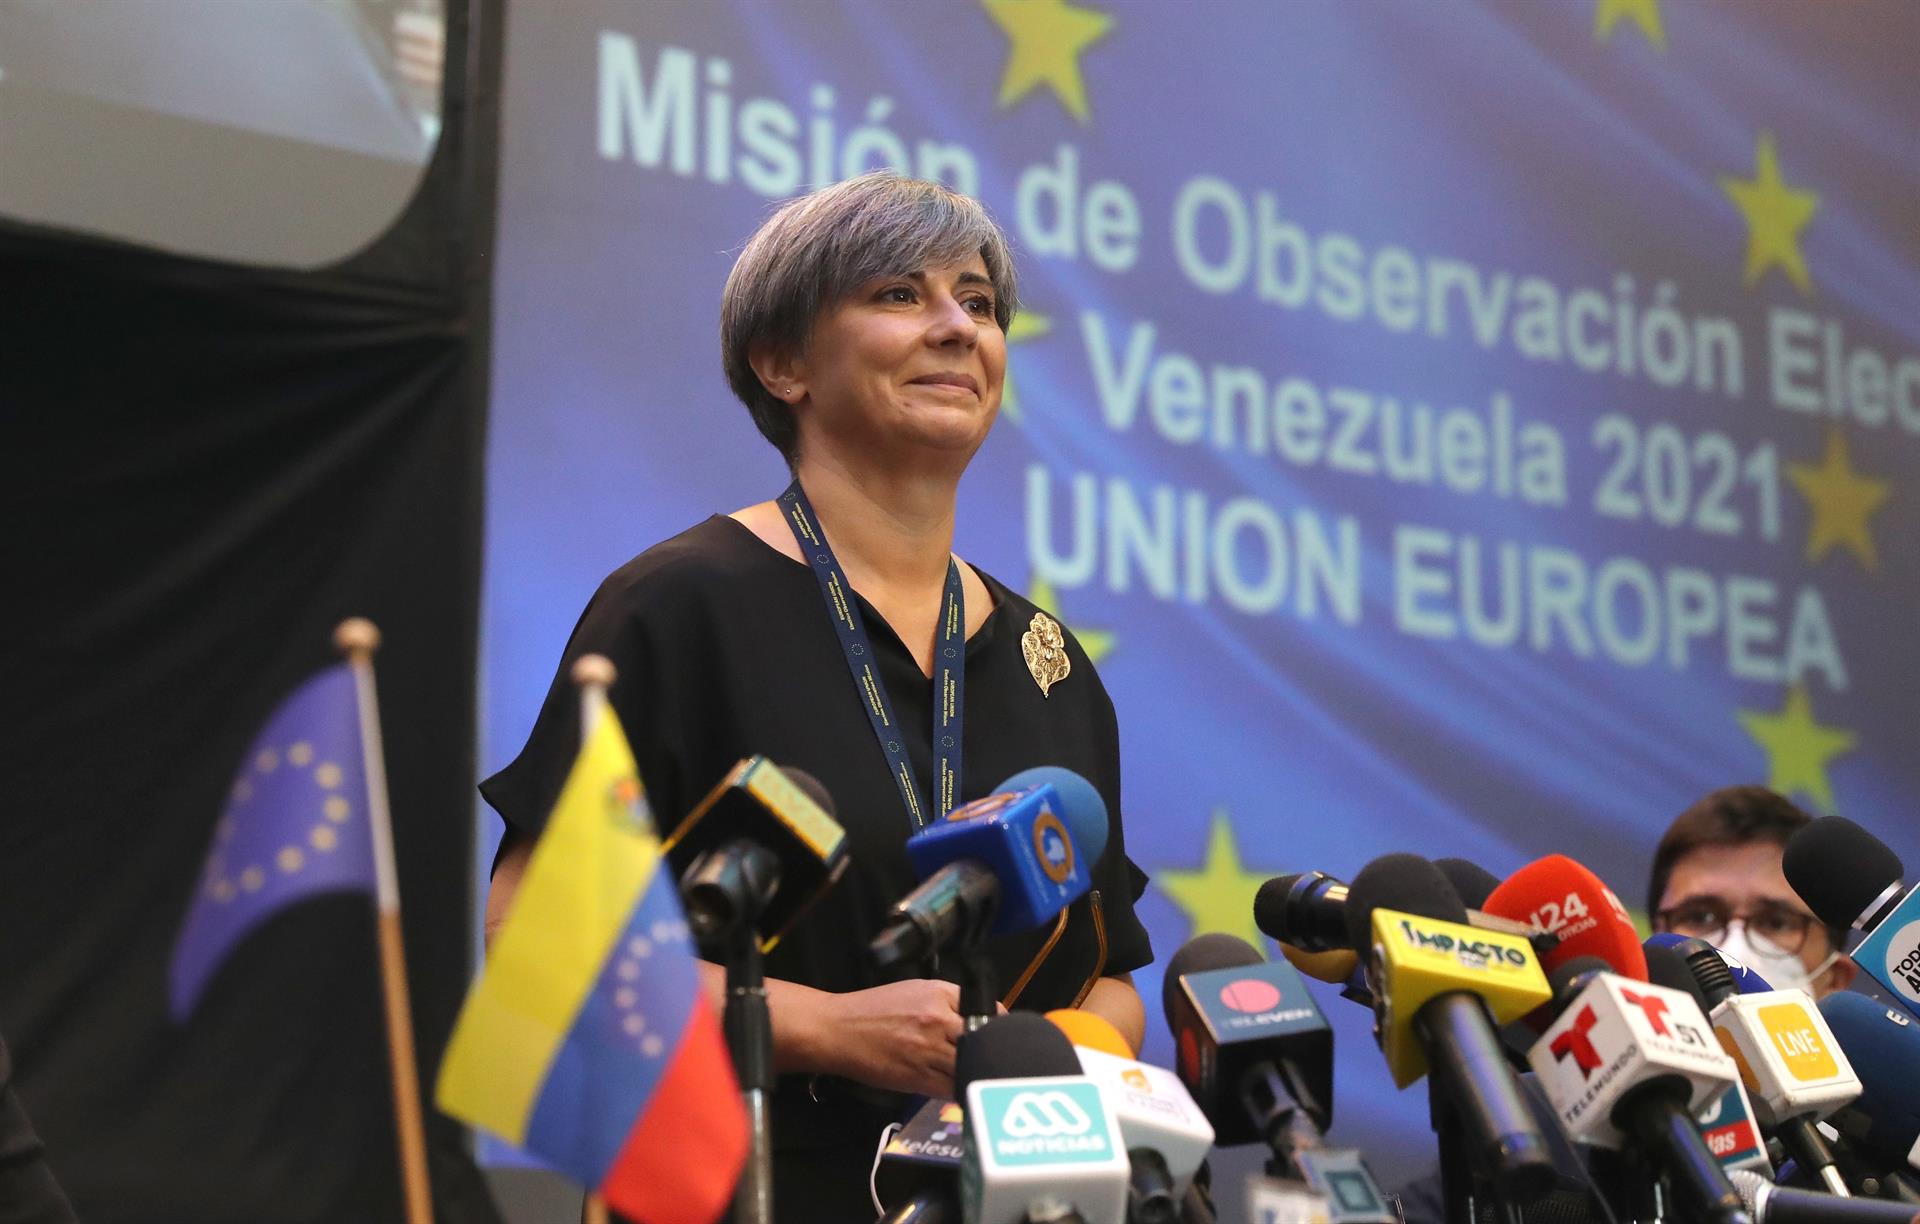 La misión de la UE constata irregularidades en las elecciones en Venezuela pese a mejorar las condiciones democráticas